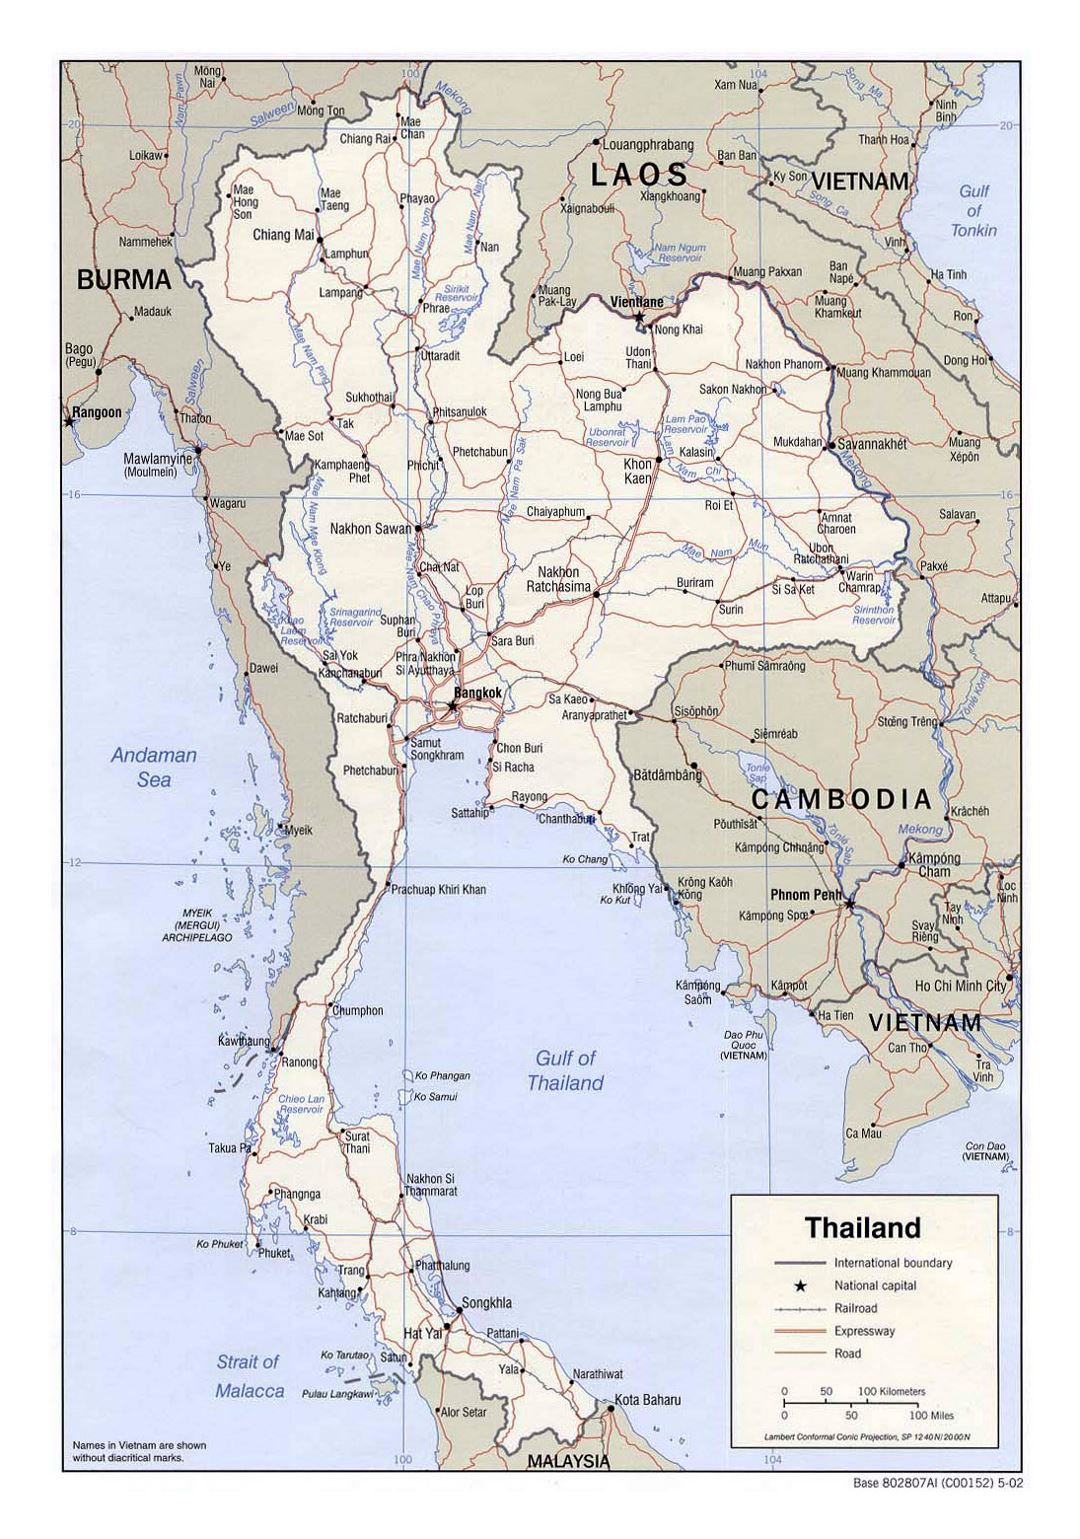 Detallado mapa político de Tailandia con carreteras, railorads y grandes ciudades - 2002